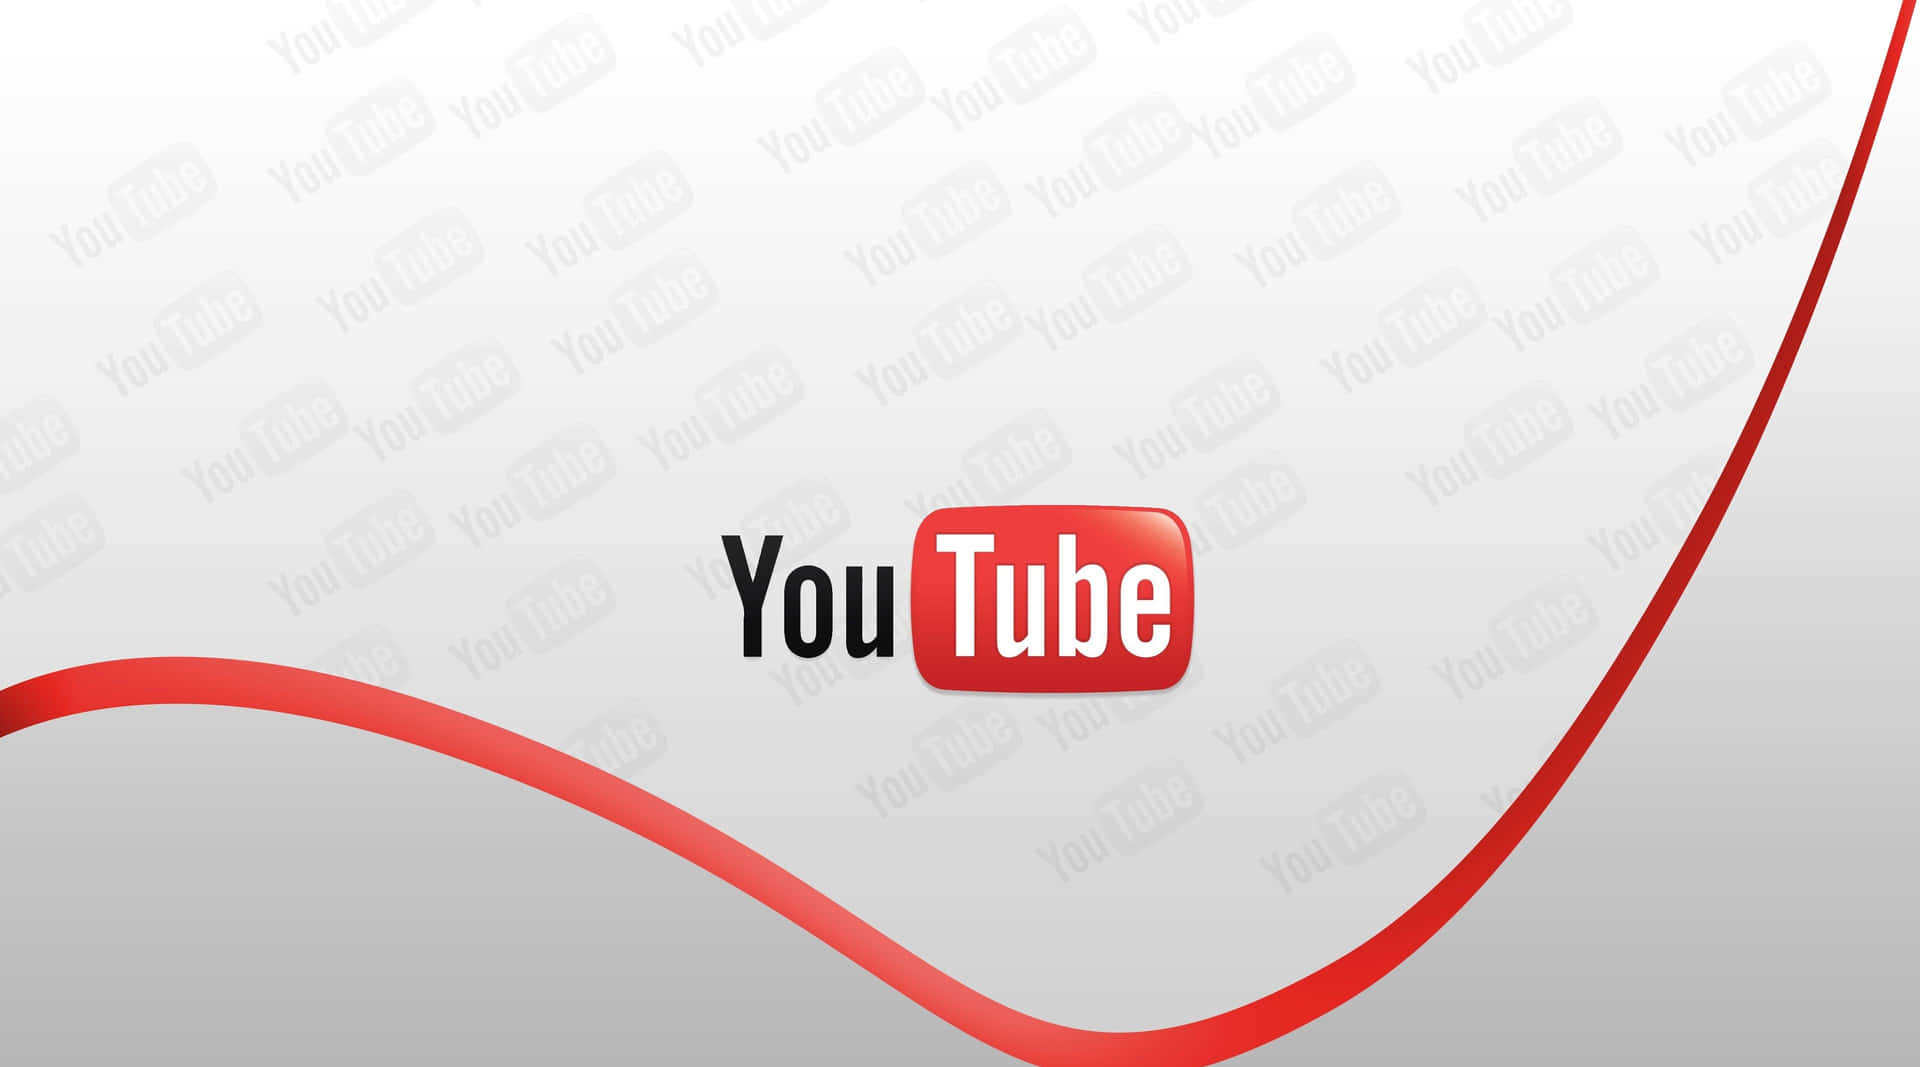 Unluminoso Logo Di Youtube Su Uno Sfondo Nero Evidenziato Da Luci Al Neon.